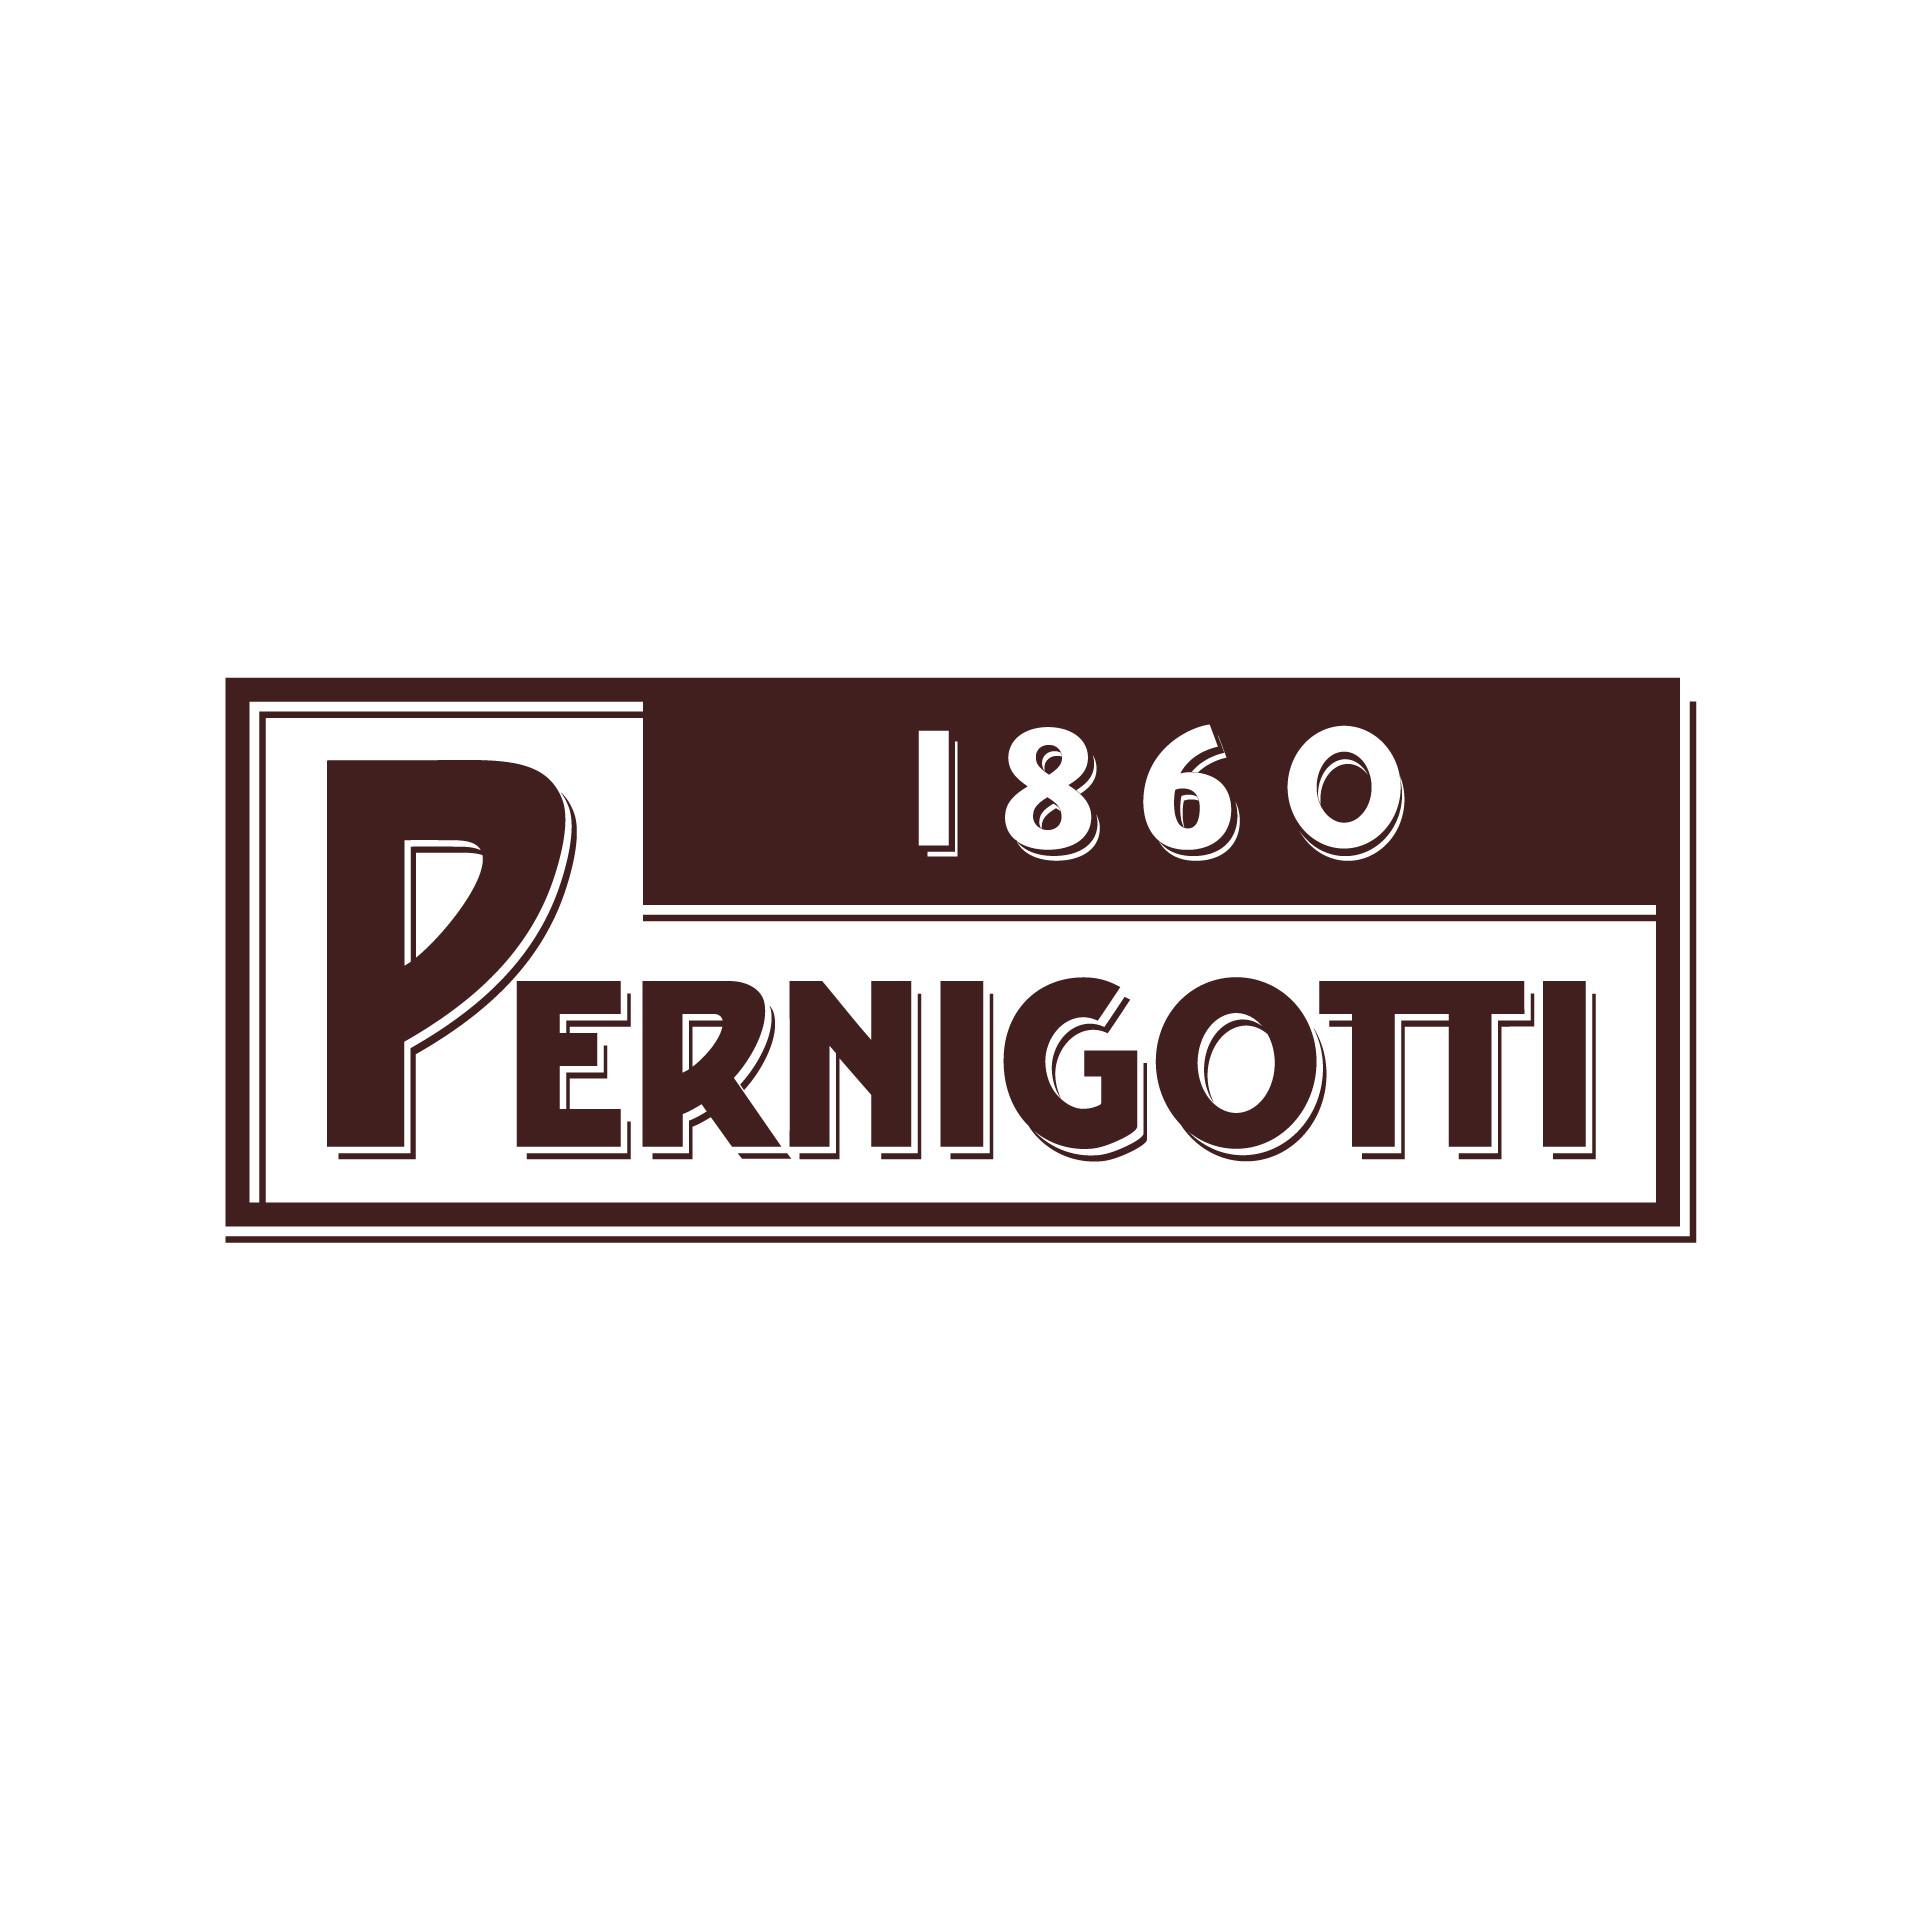 Pernigotti 1860